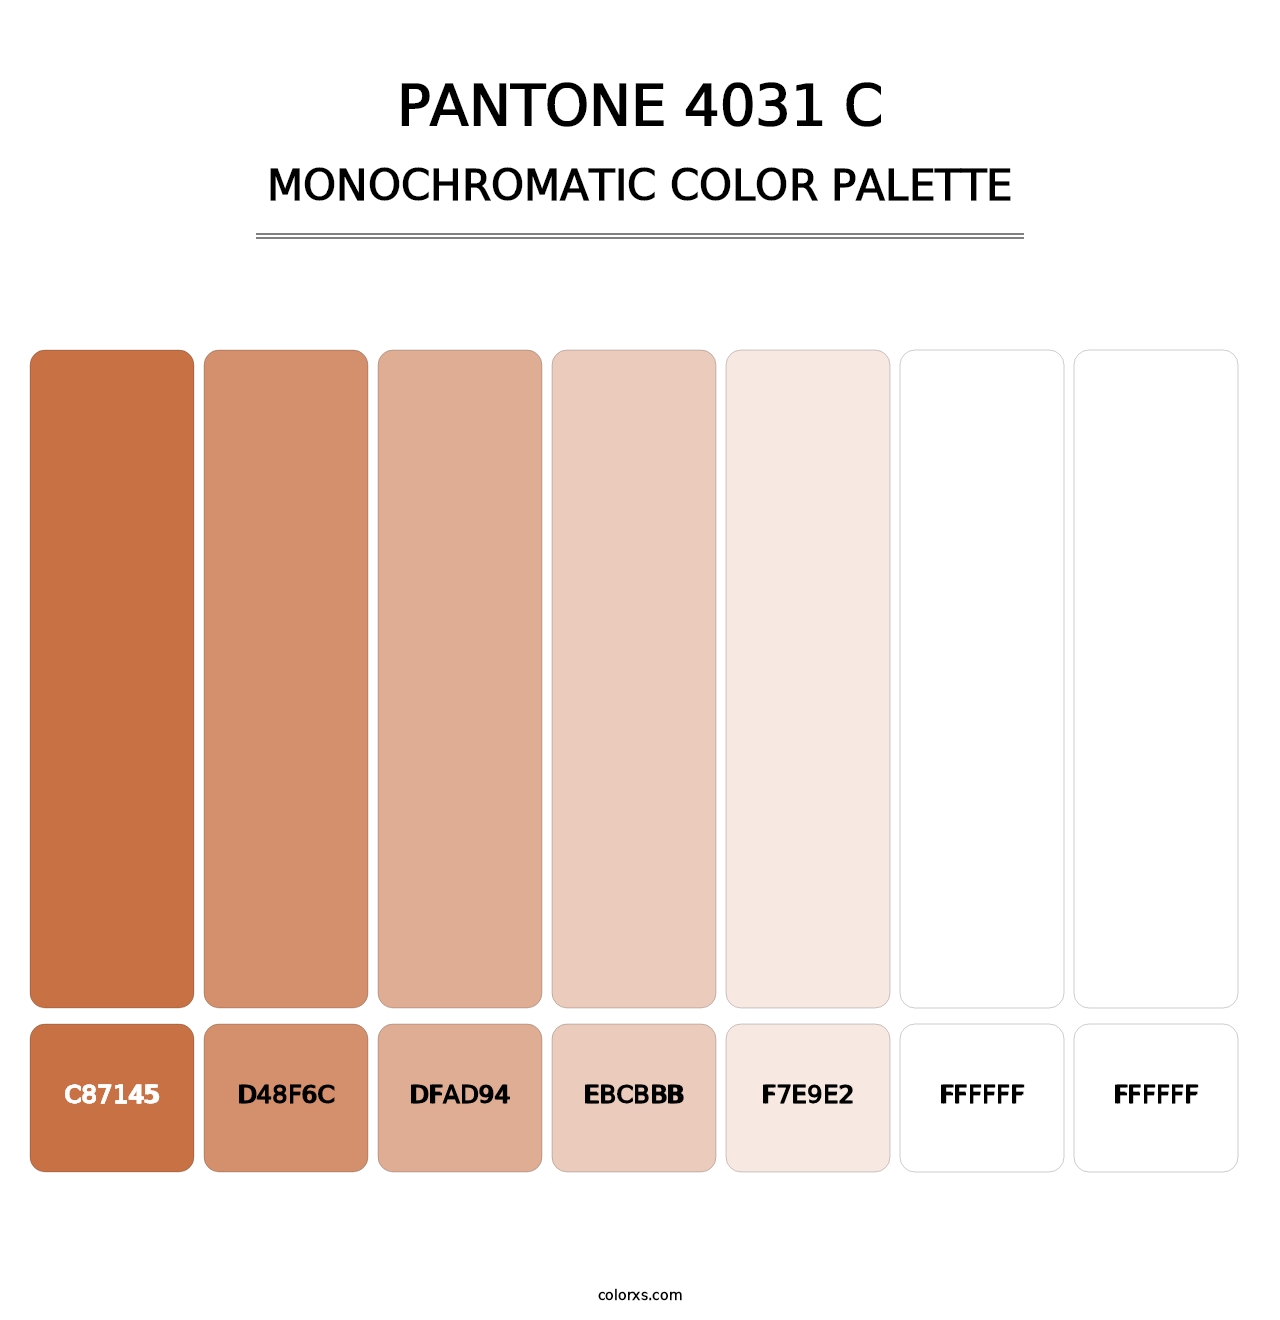 PANTONE 4031 C - Monochromatic Color Palette